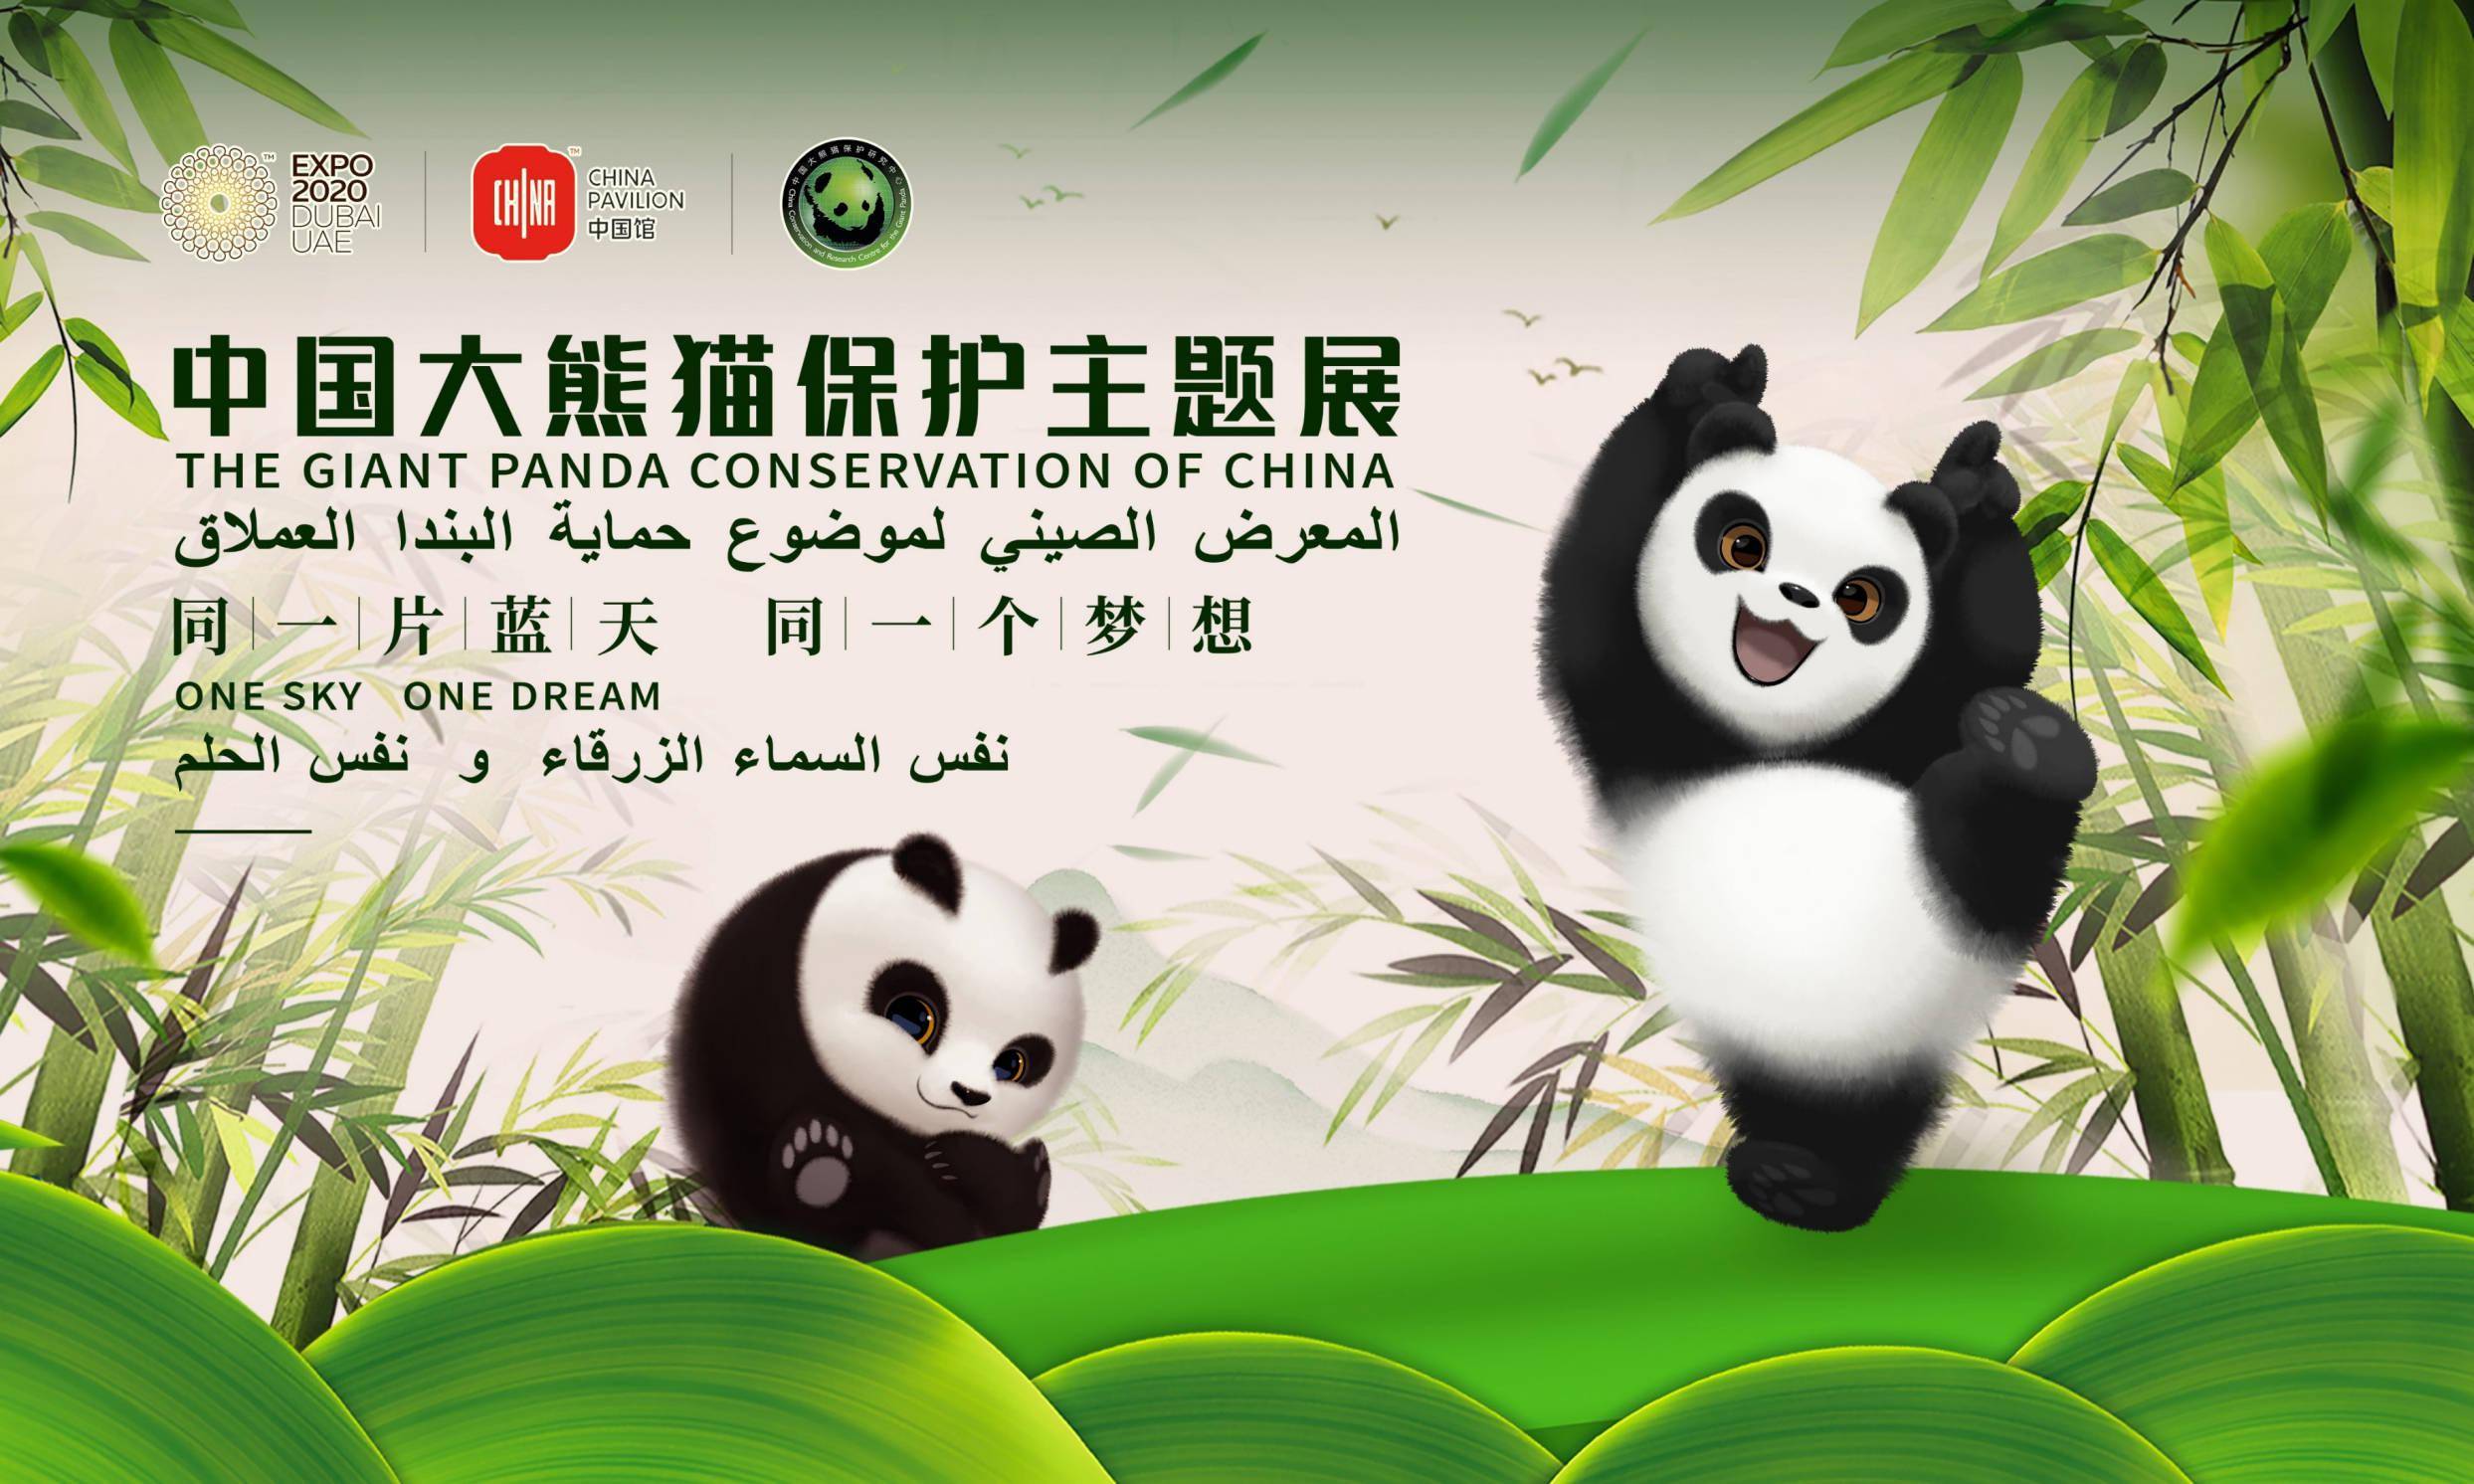 vr现场体验喂熊中国大熊猫保护主题展正式亮相阿联酋2020年迪拜世界